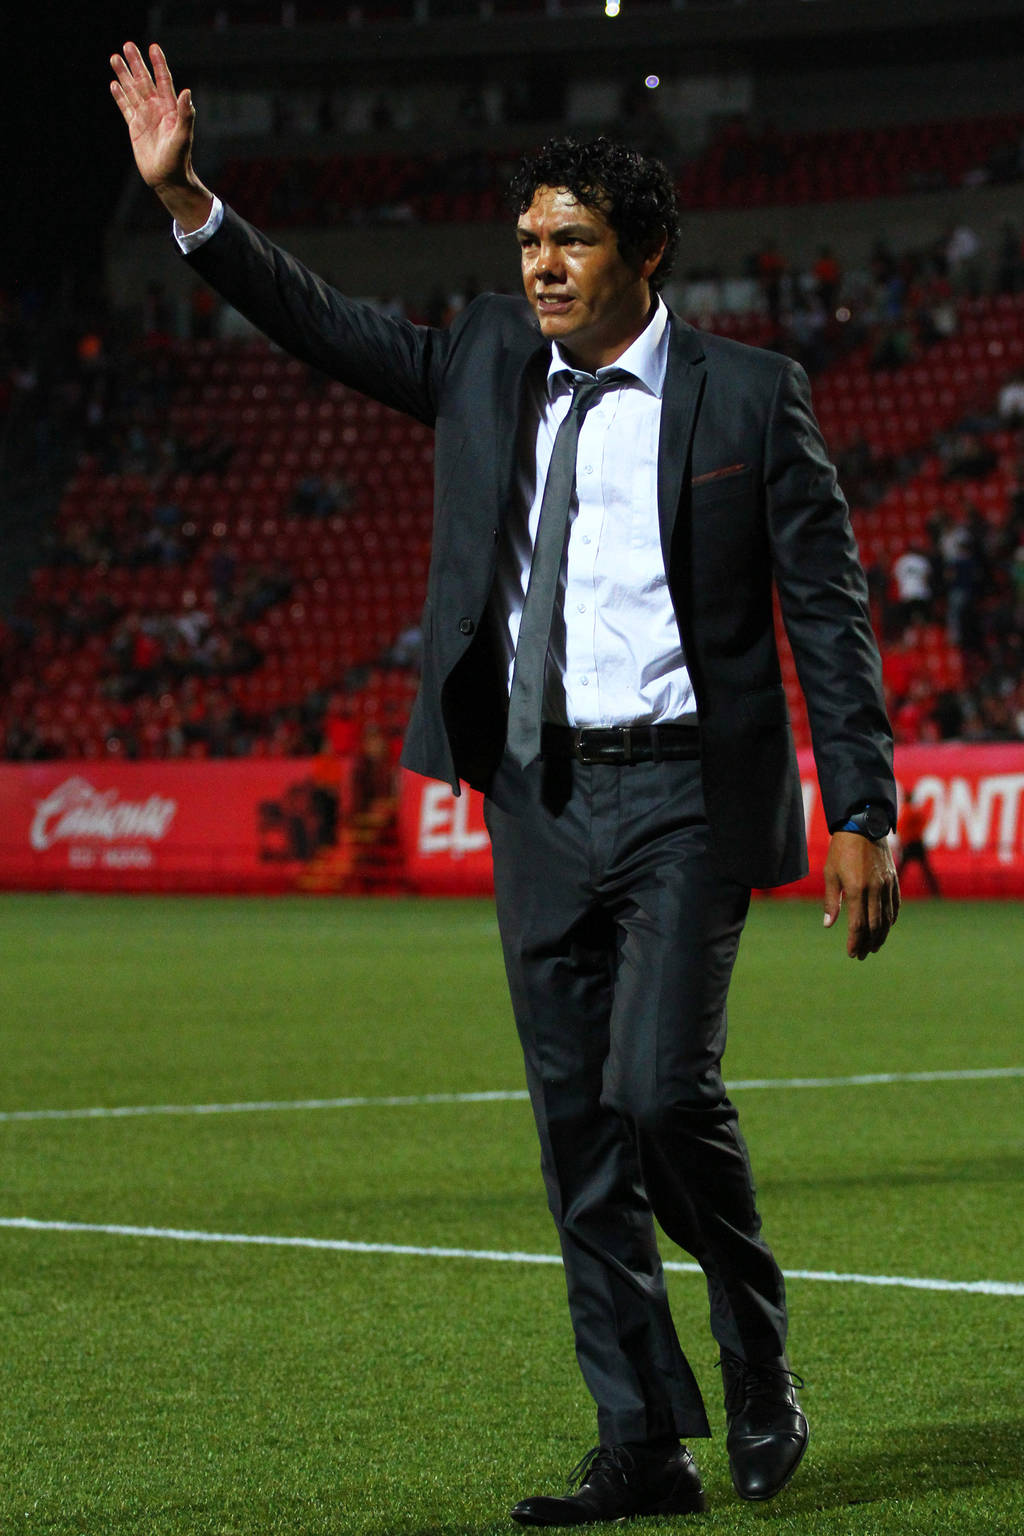 Joel 'Tiburón' Sánchez es el director técnico de los Leones Negros de la UdeG, equipo del Ascenso MX. Sánchez cree que UdeG puede levantar el nivel